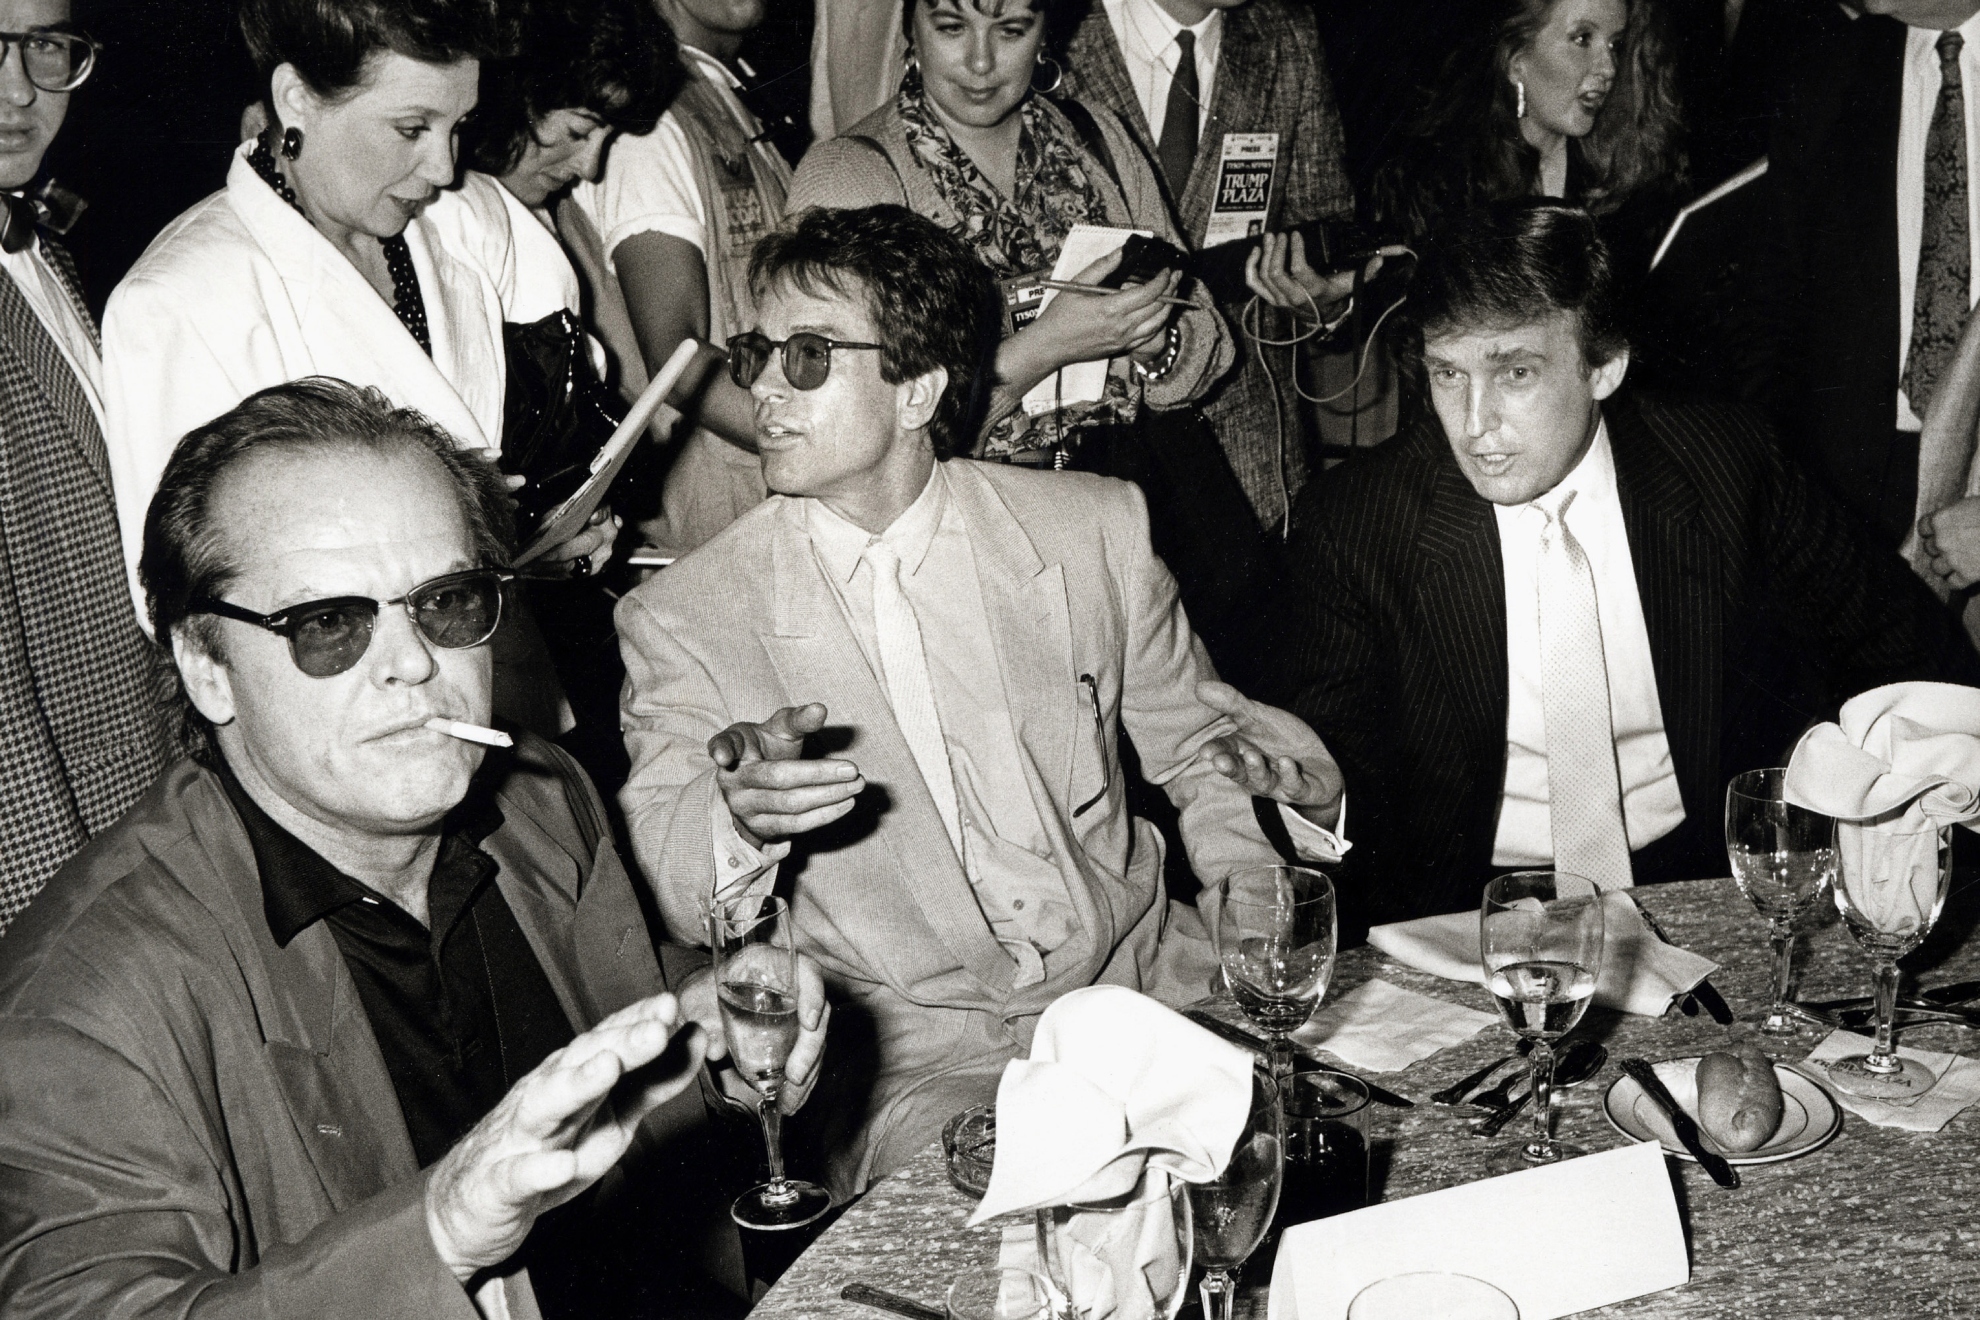 Jack Nicholson, Warren Beatty y Donald Trump antes del combate entre Mike Tyson y Michael Spinks. A la derecha de Trump se encontraba Paul Simon, fuera de esta imagen.